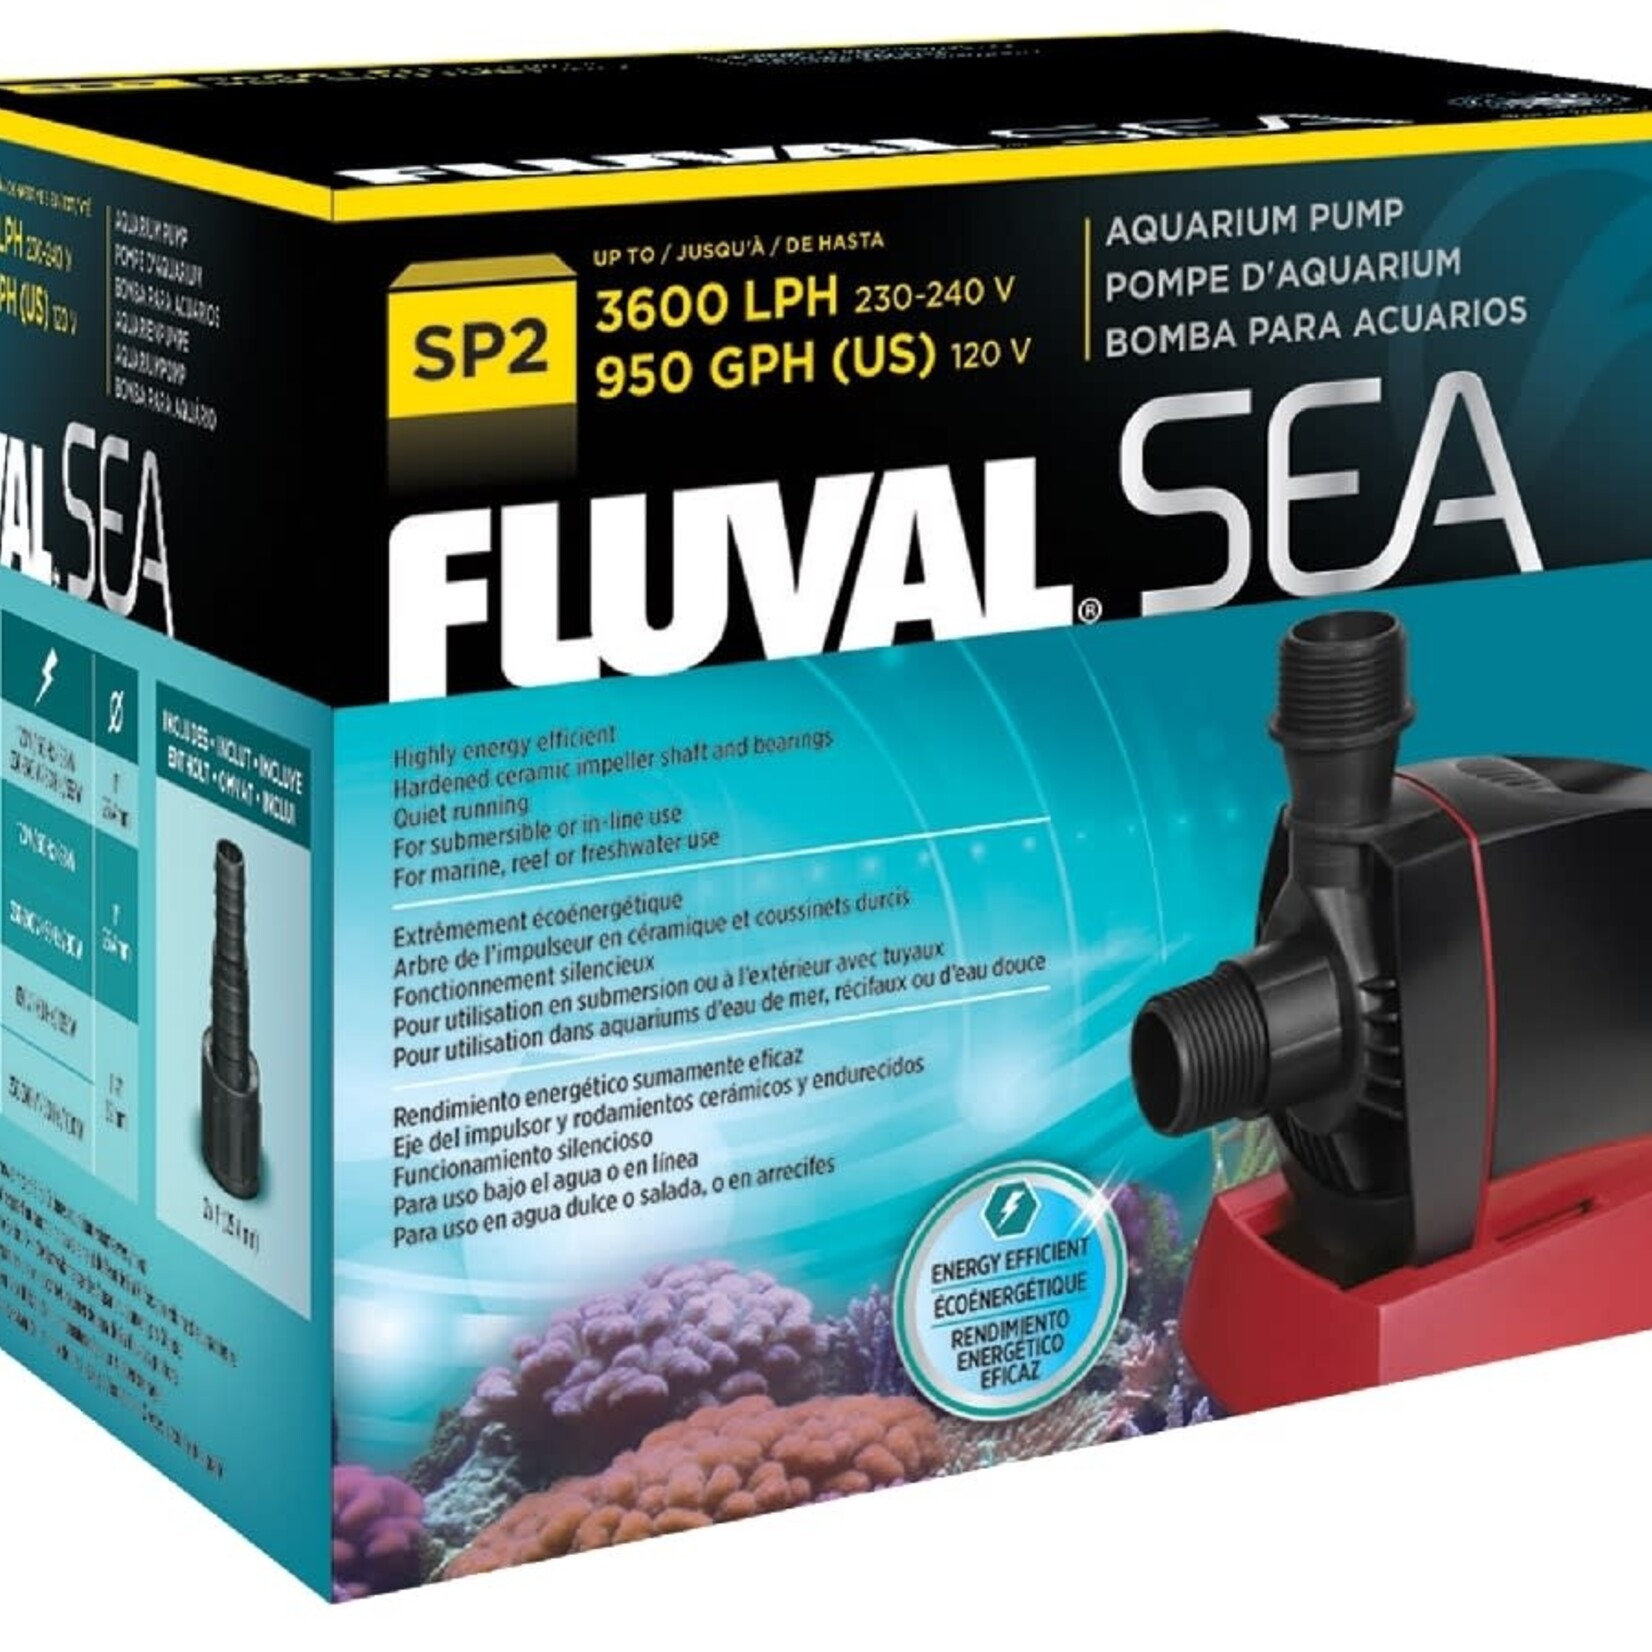 Fluval Sea FLUVAL SEA AQUARIUM PUMP SP2